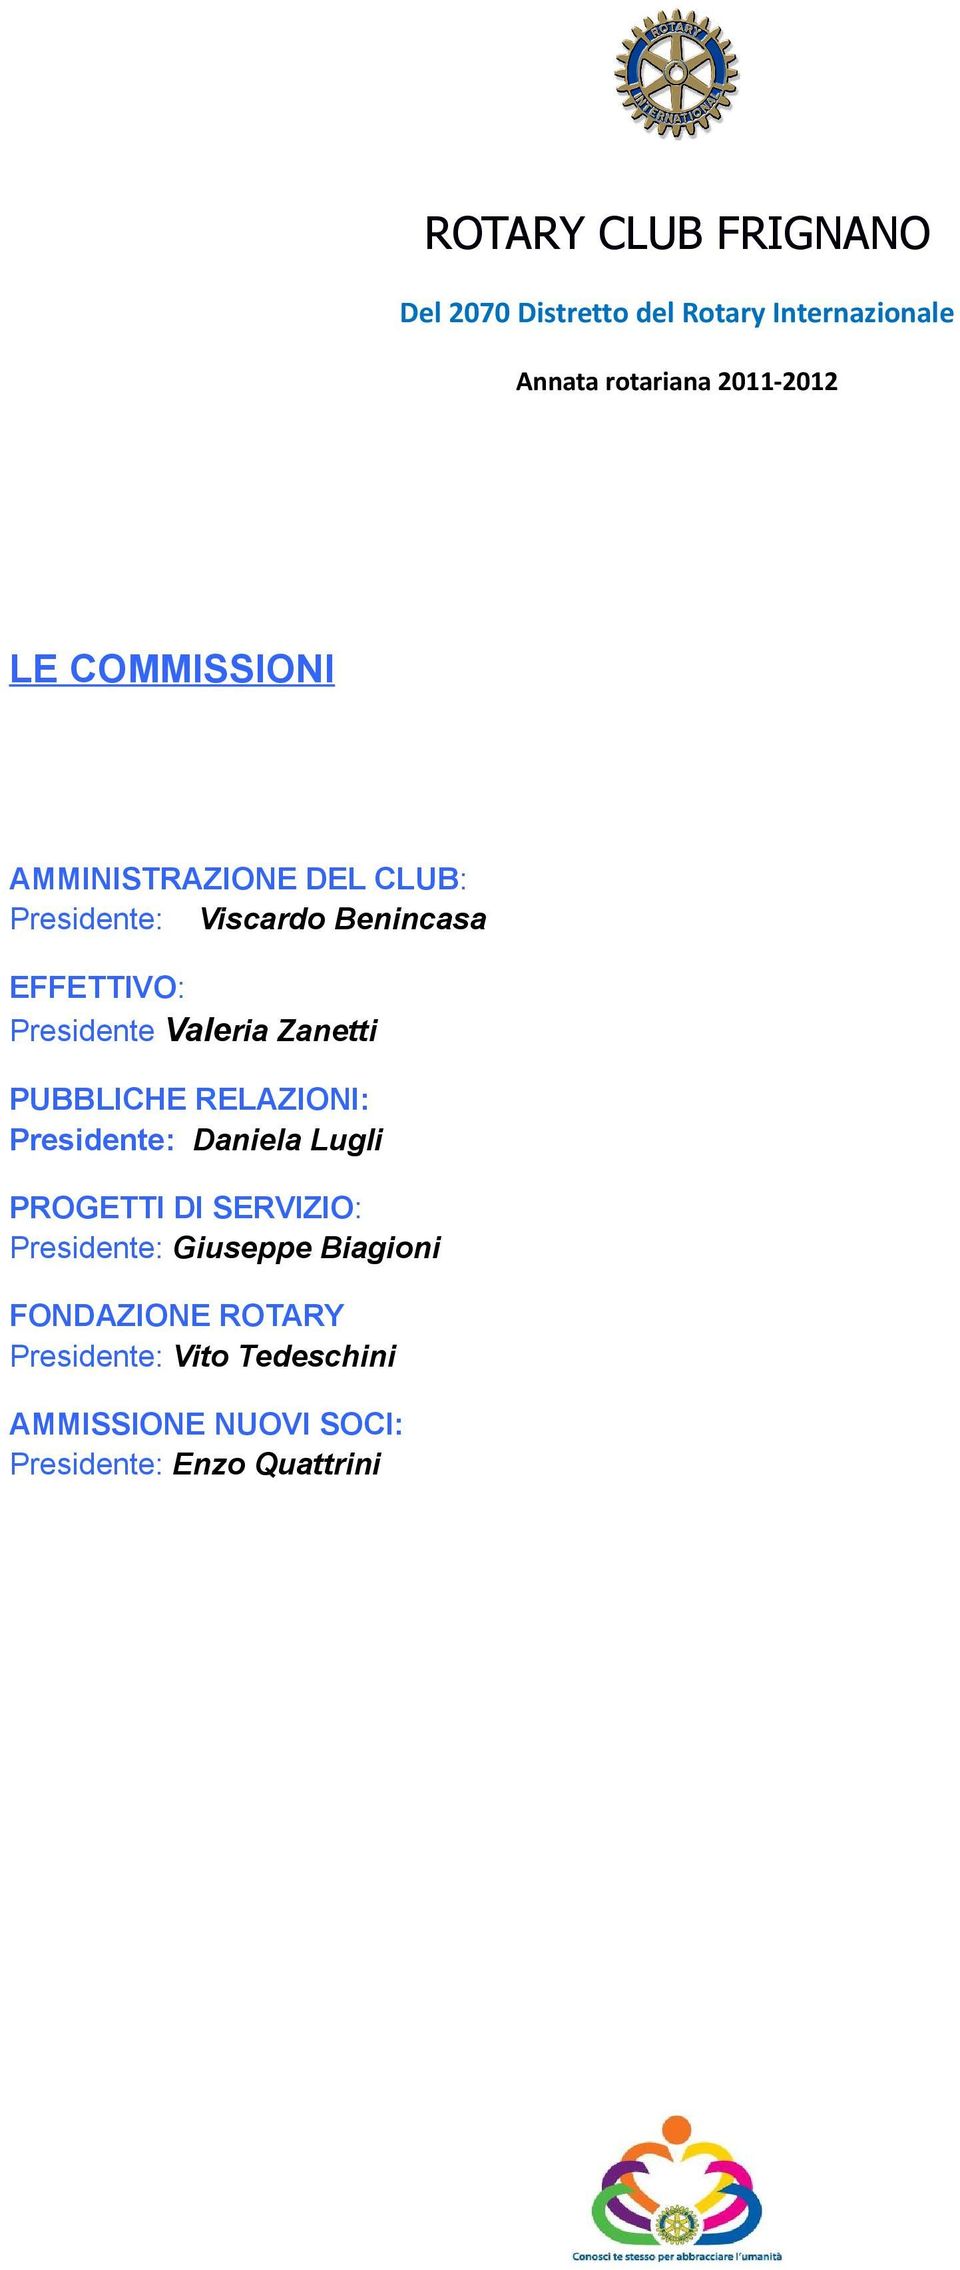 Zanetti PUBBLICHE RELAZIONI: Presidente: Daniela Lugli PROGETTI DI SERVIZIO: Presidente: Giuseppe